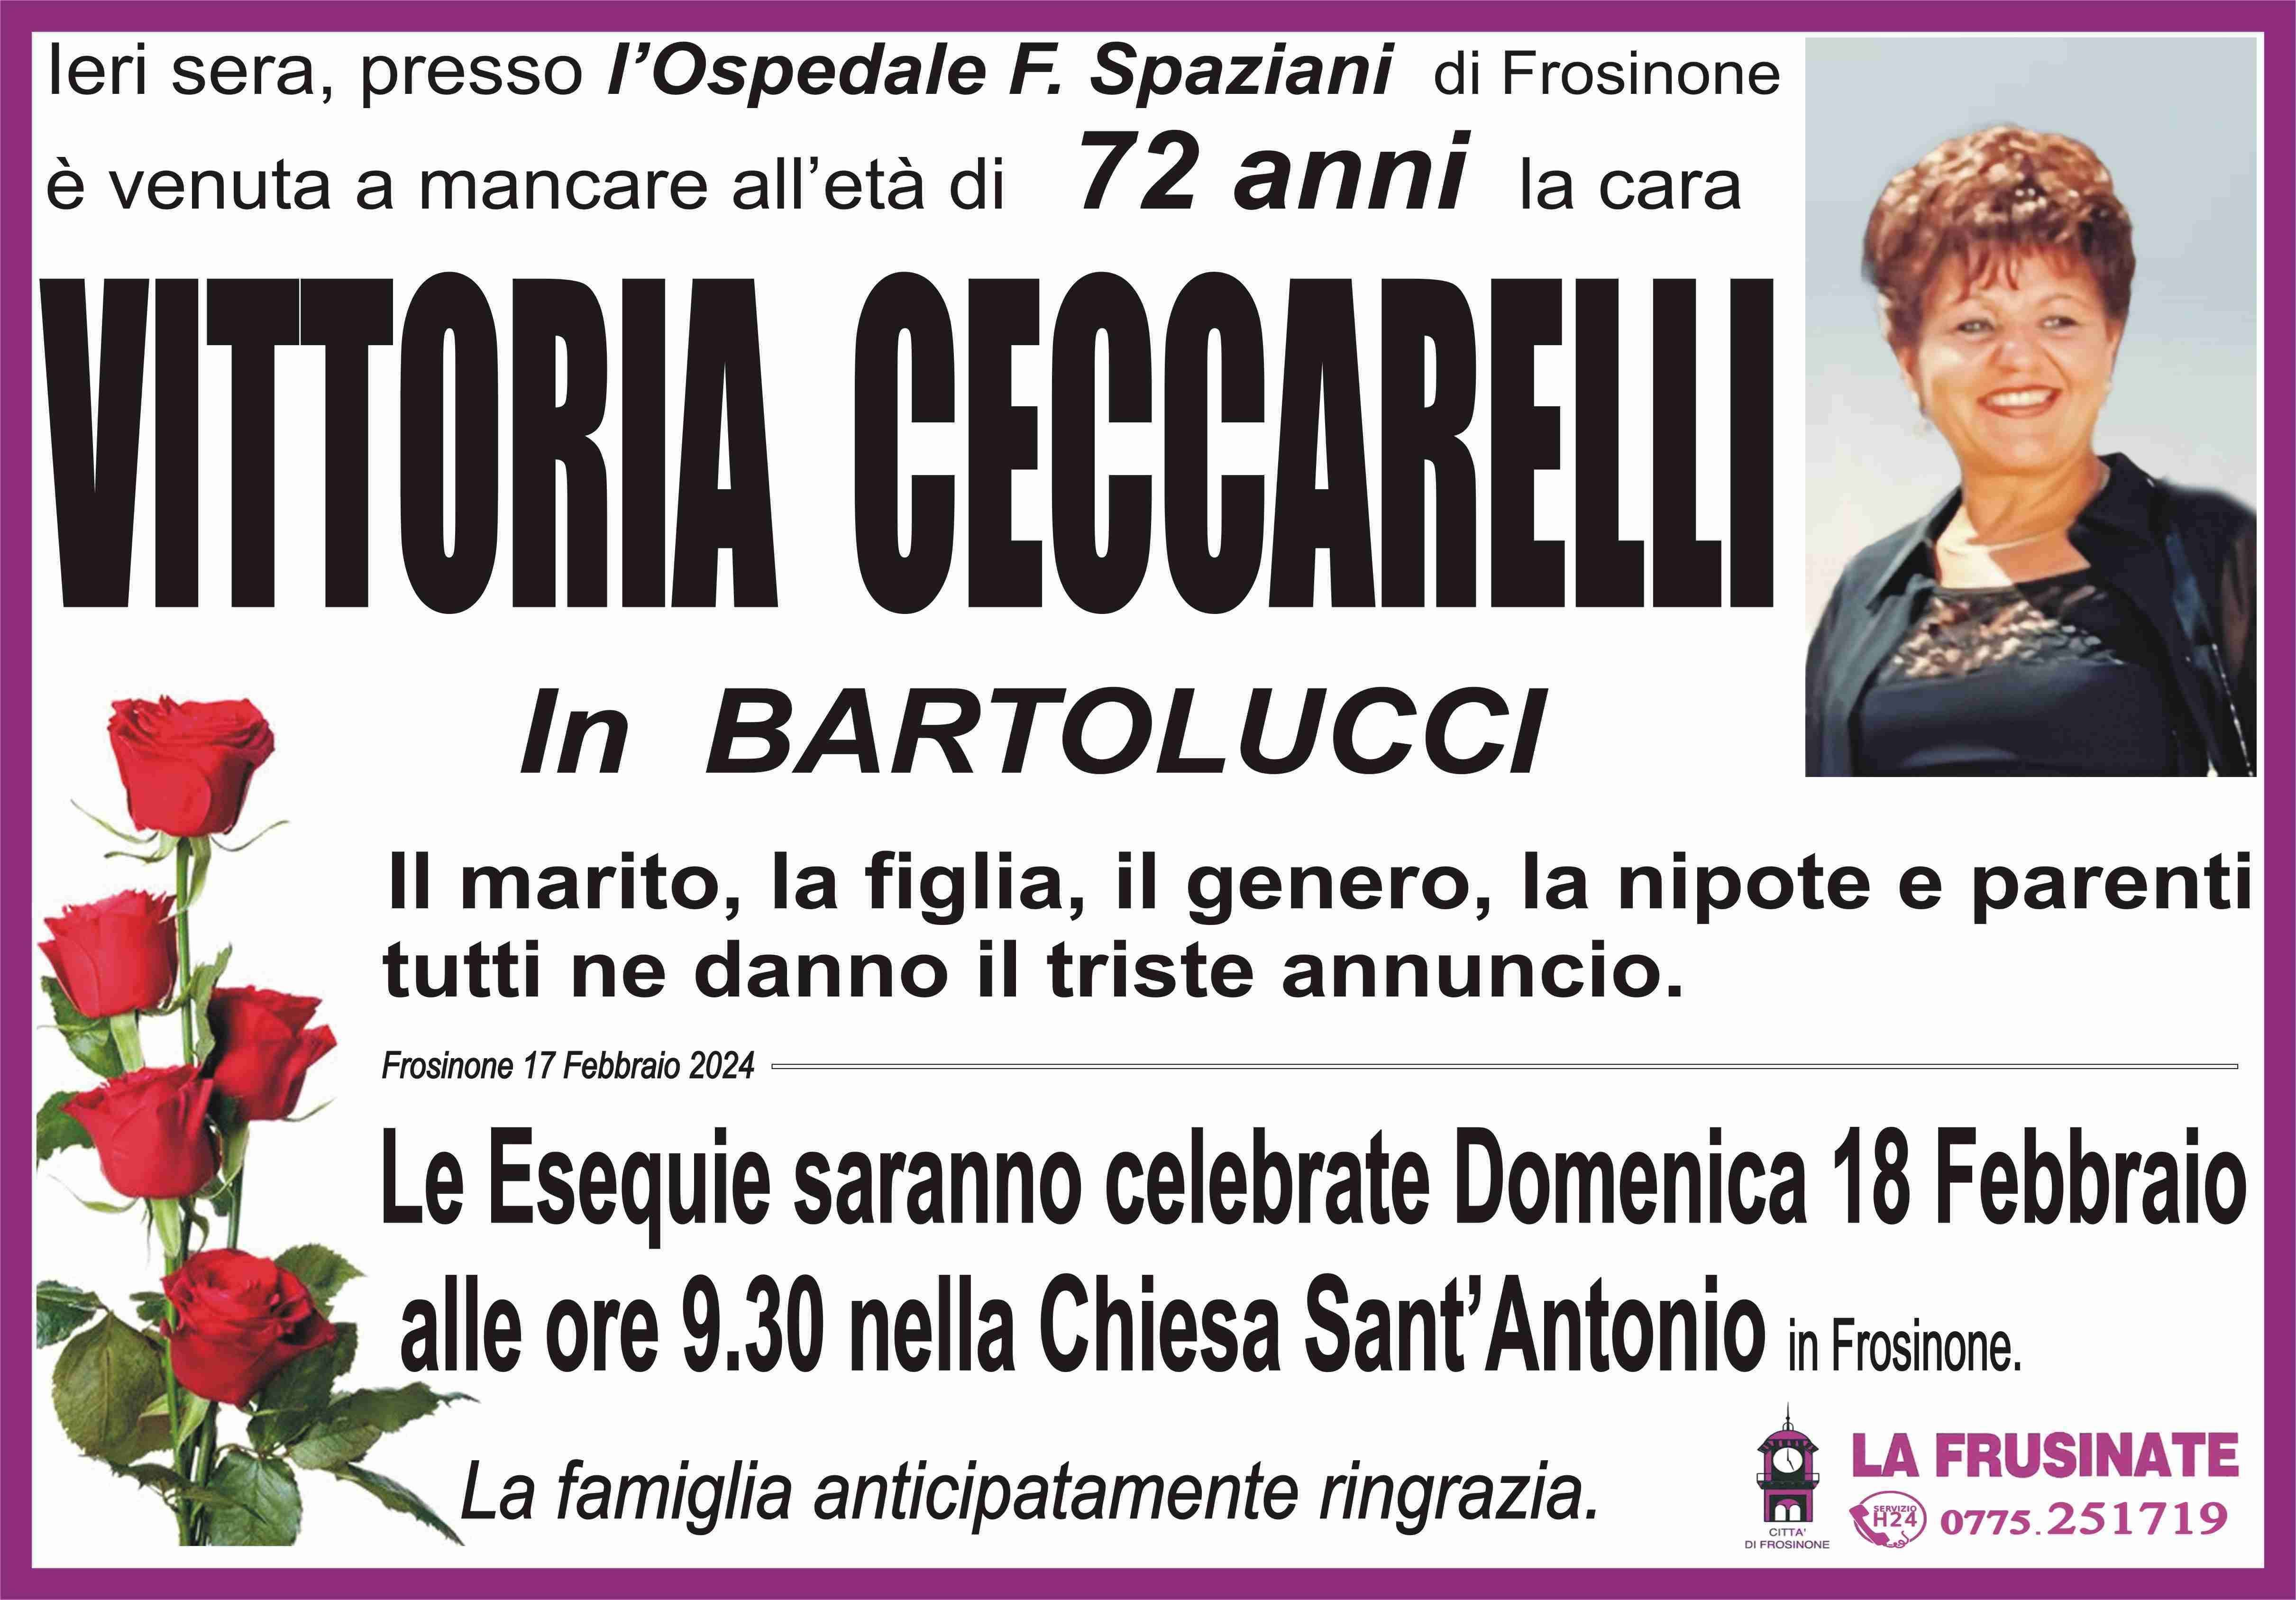 Vittoria Ceccarelli